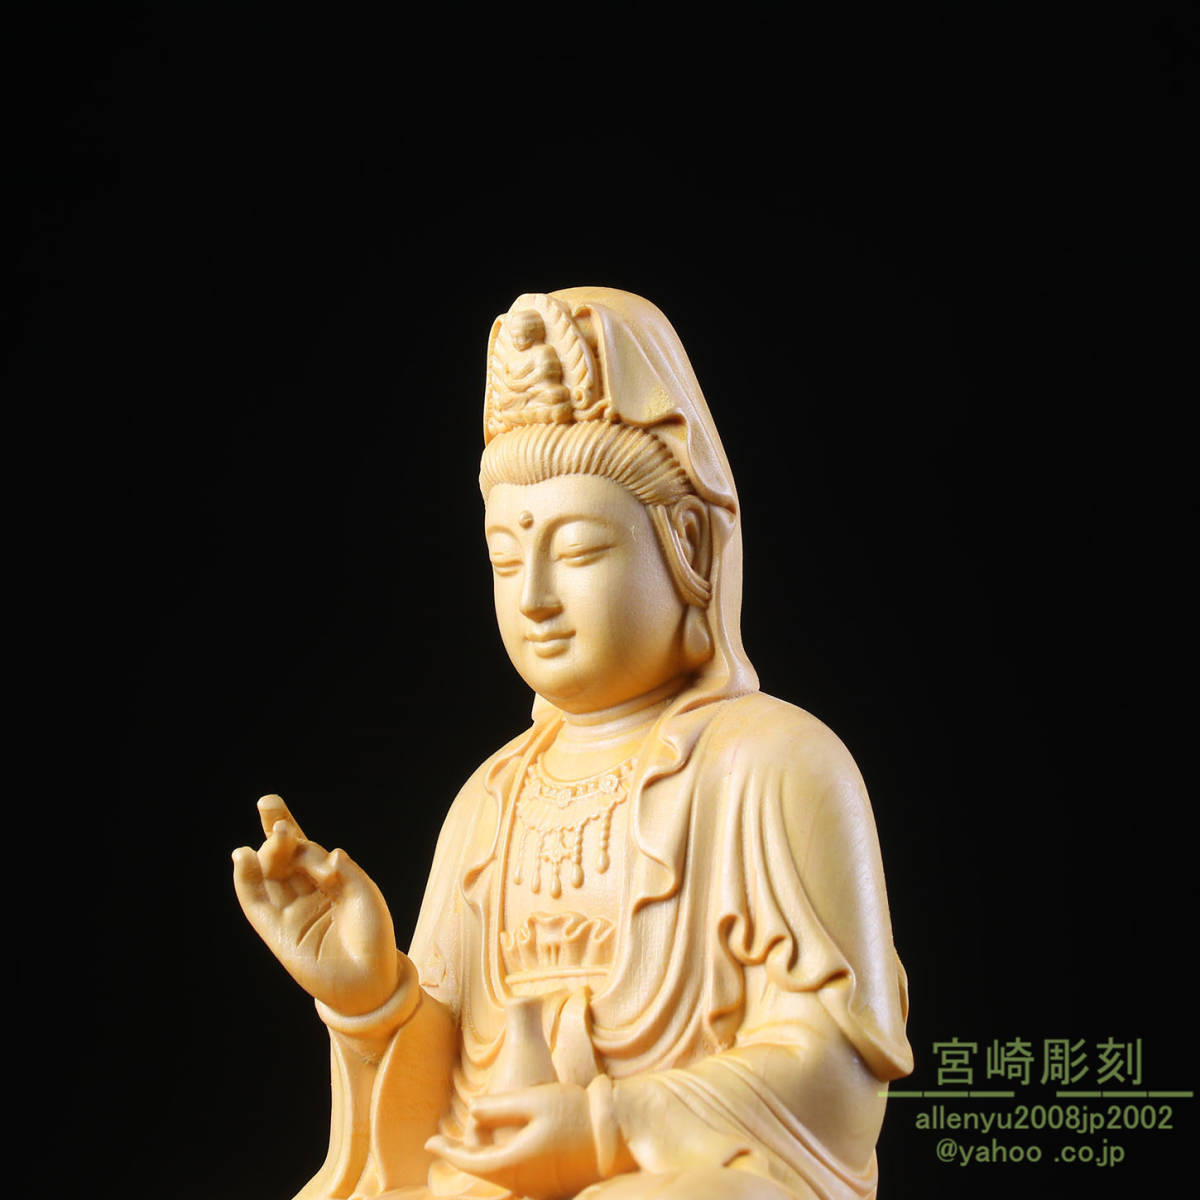 送料無料 仏教美術 香木 白檀彫刻 観音菩薩像 仏像 置物 V R4991B